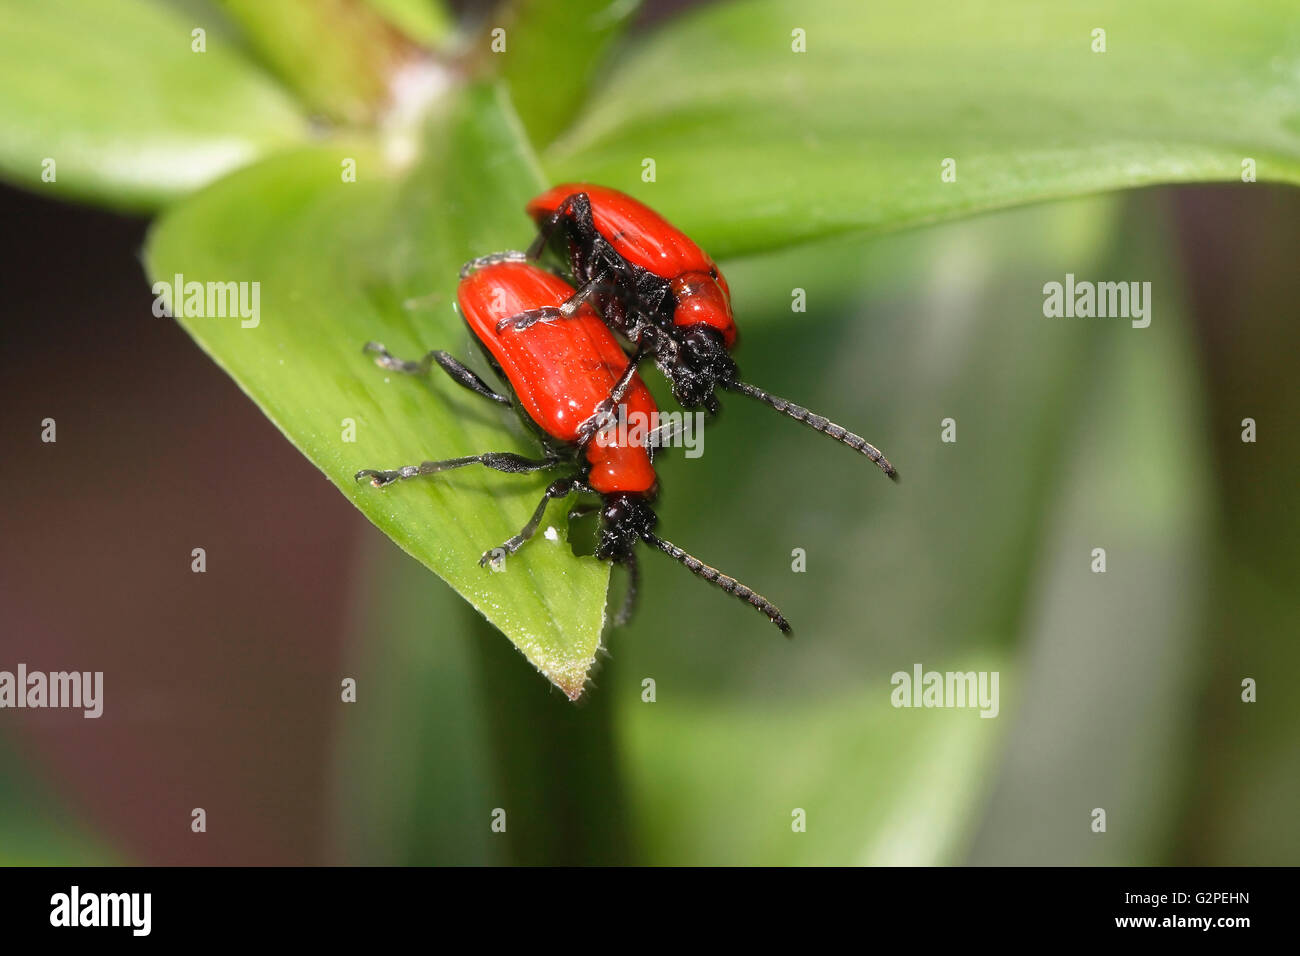 Les insectes, Beetle, Scarlet Lily Beetle Beetle, Lilloceris Lilii, insectes de couleur rouge, feuillage vert sur l'accouplement. Banque D'Images